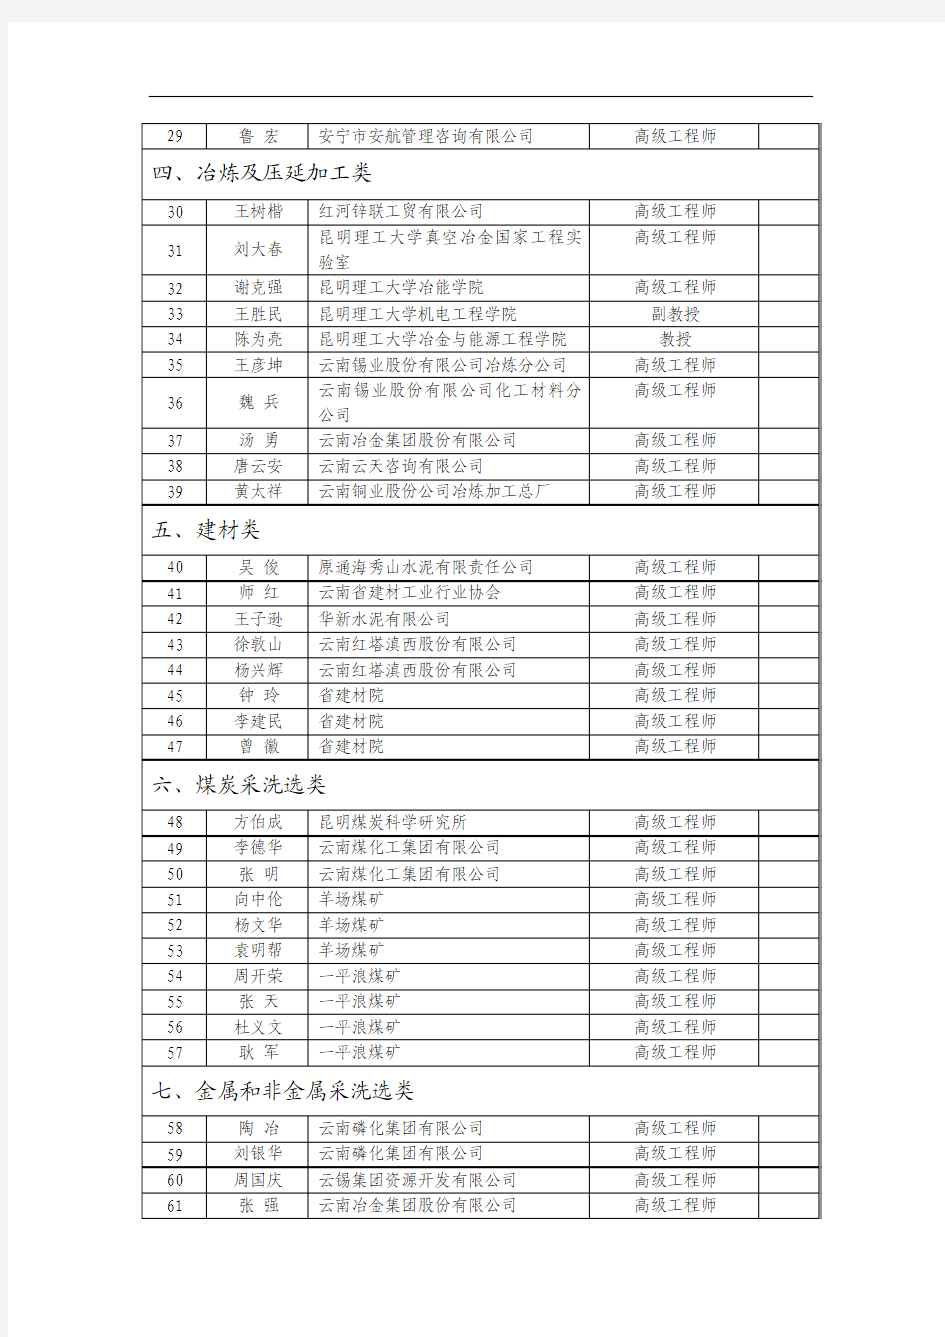 云南省清洁生产专家库专家名单(第一批)